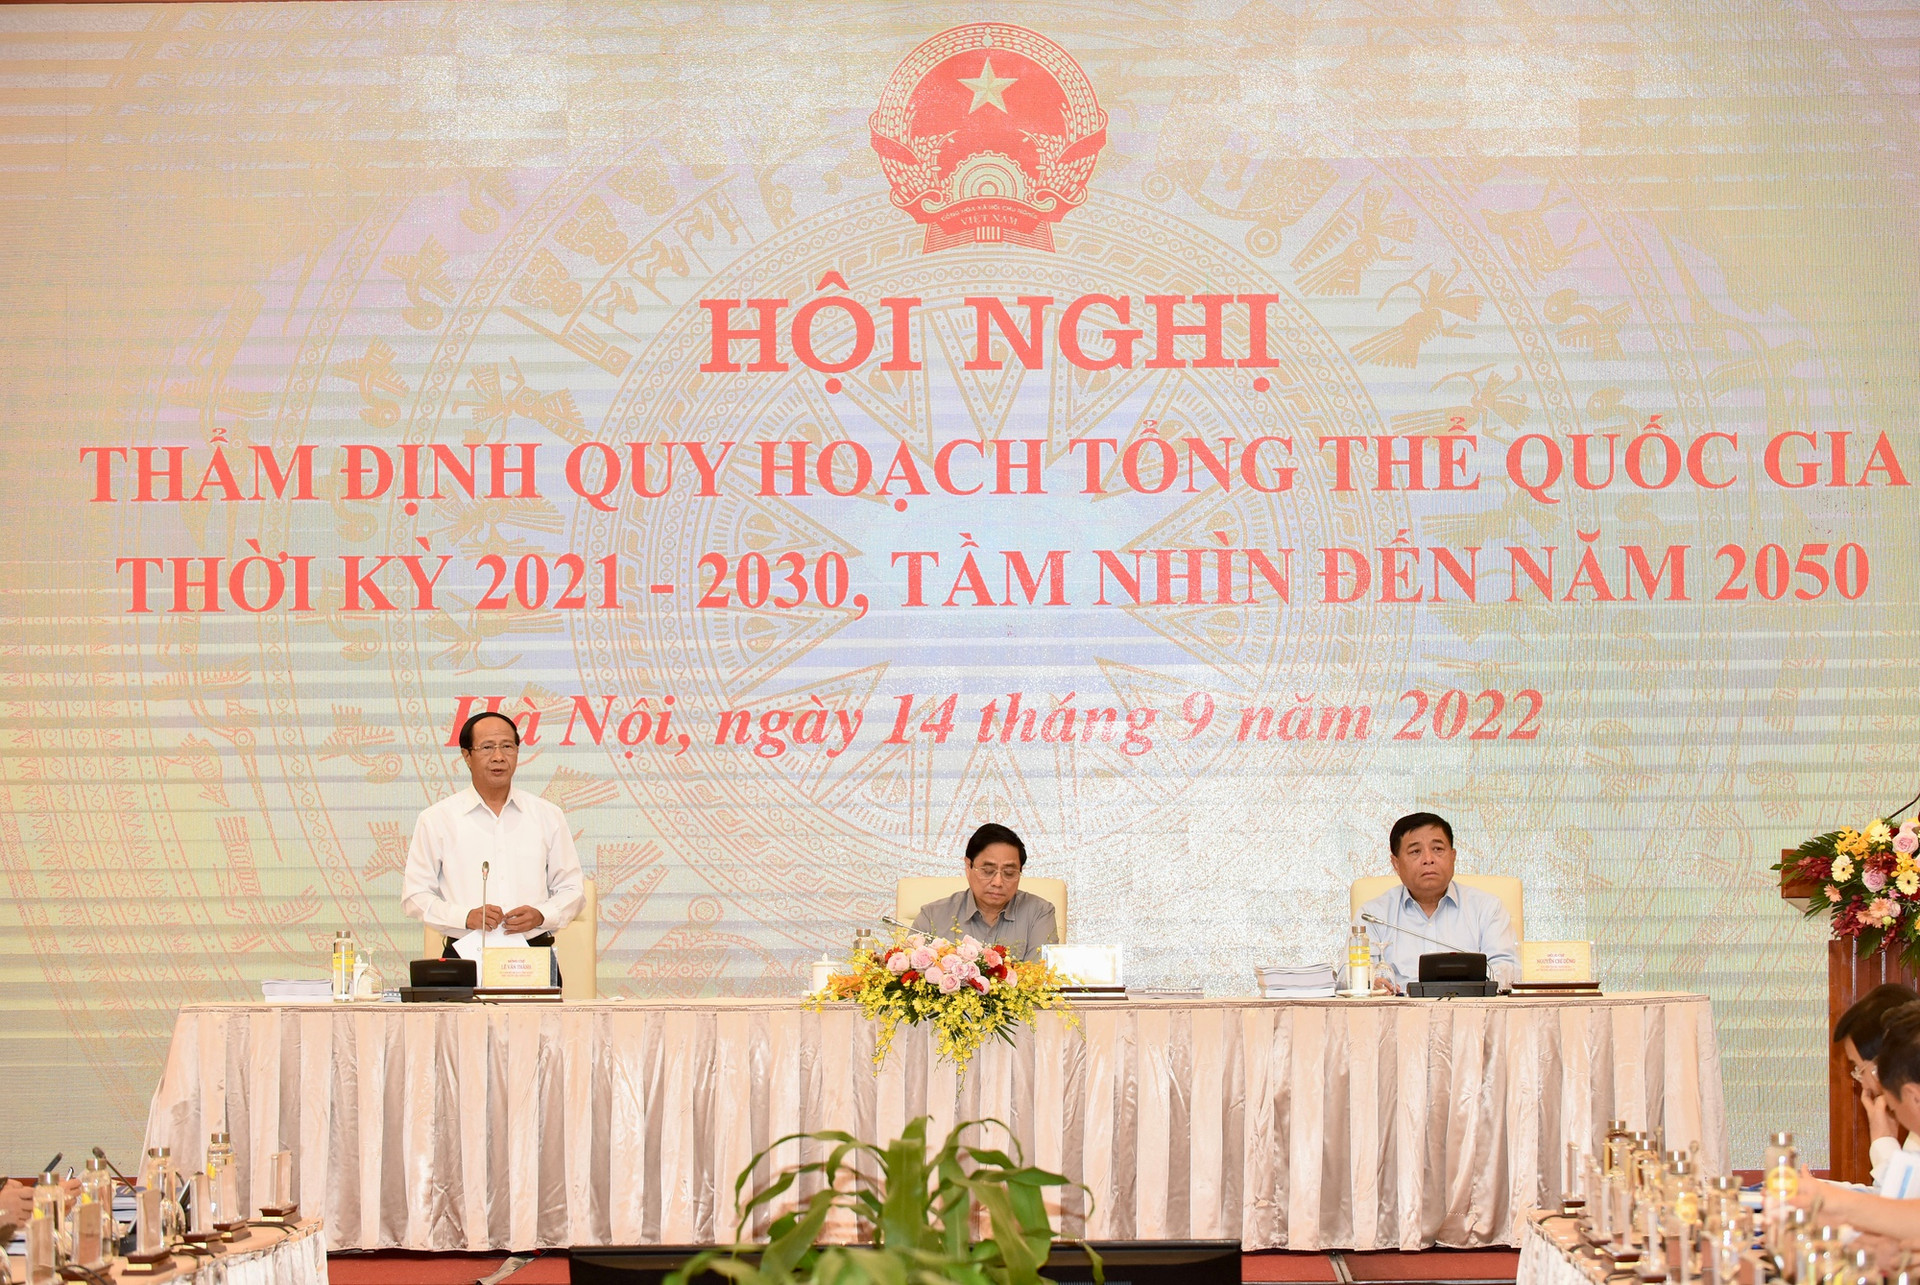 Thủ tướng Phạm Minh Chính chủ trì hội nghị thẩm định Quy hoạch tổng thể quốc gia - Ảnh 4.